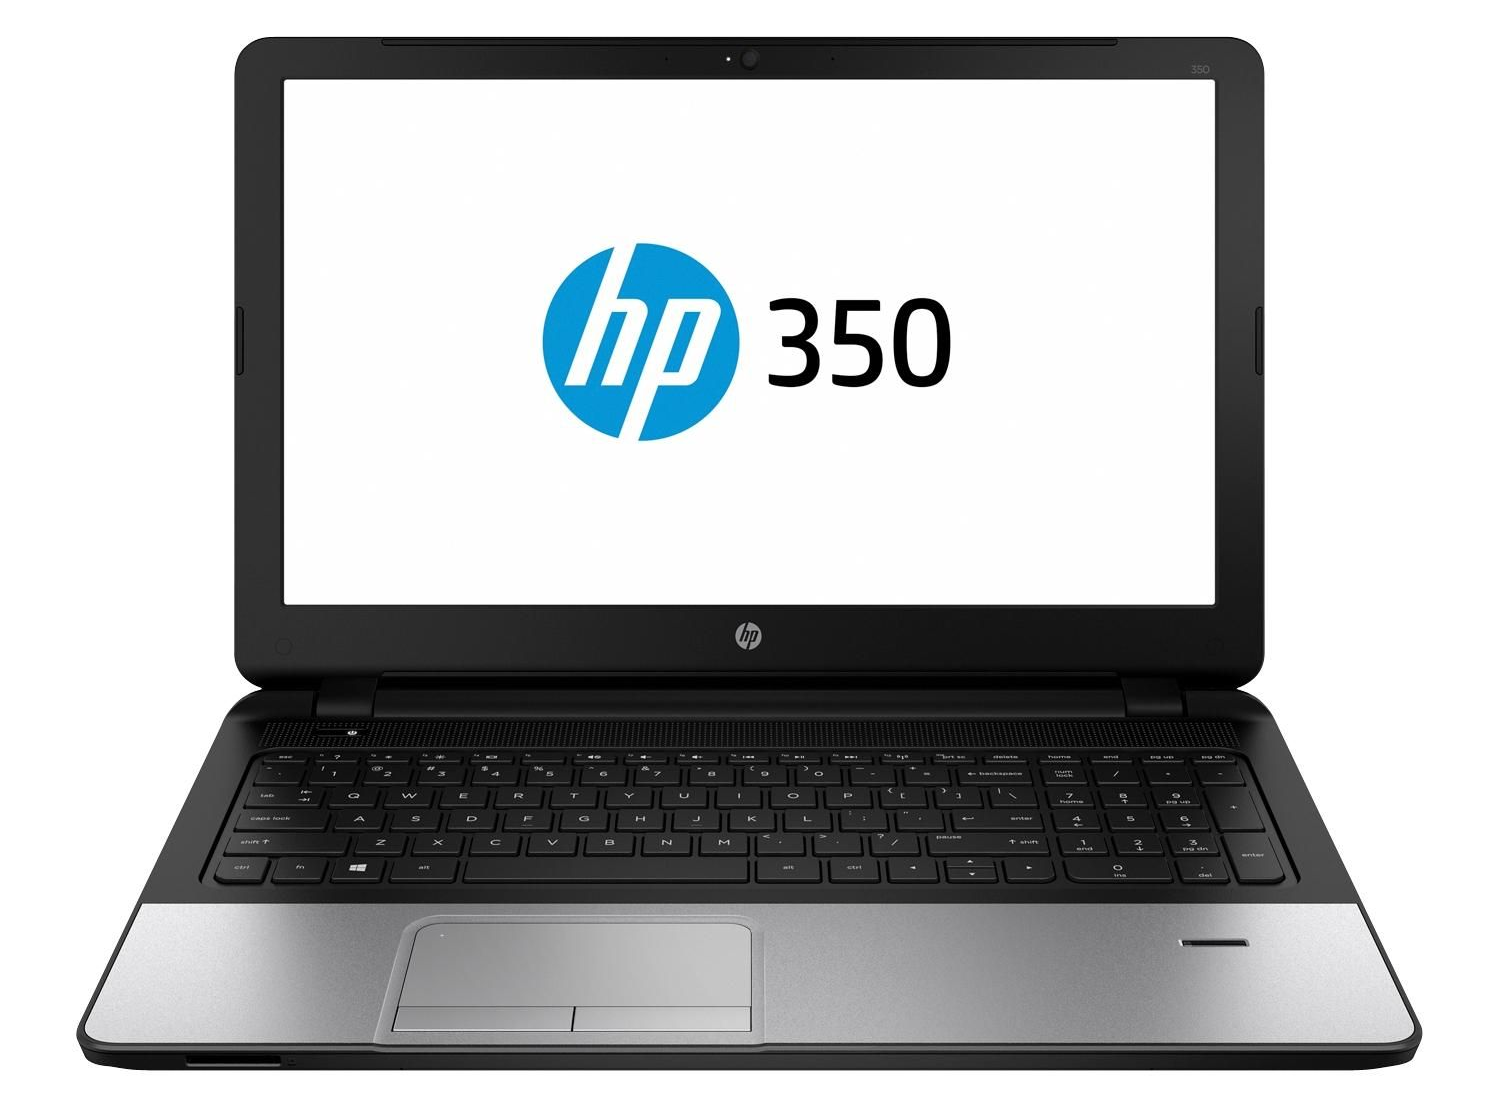 HP 350 G2 Business Notebook